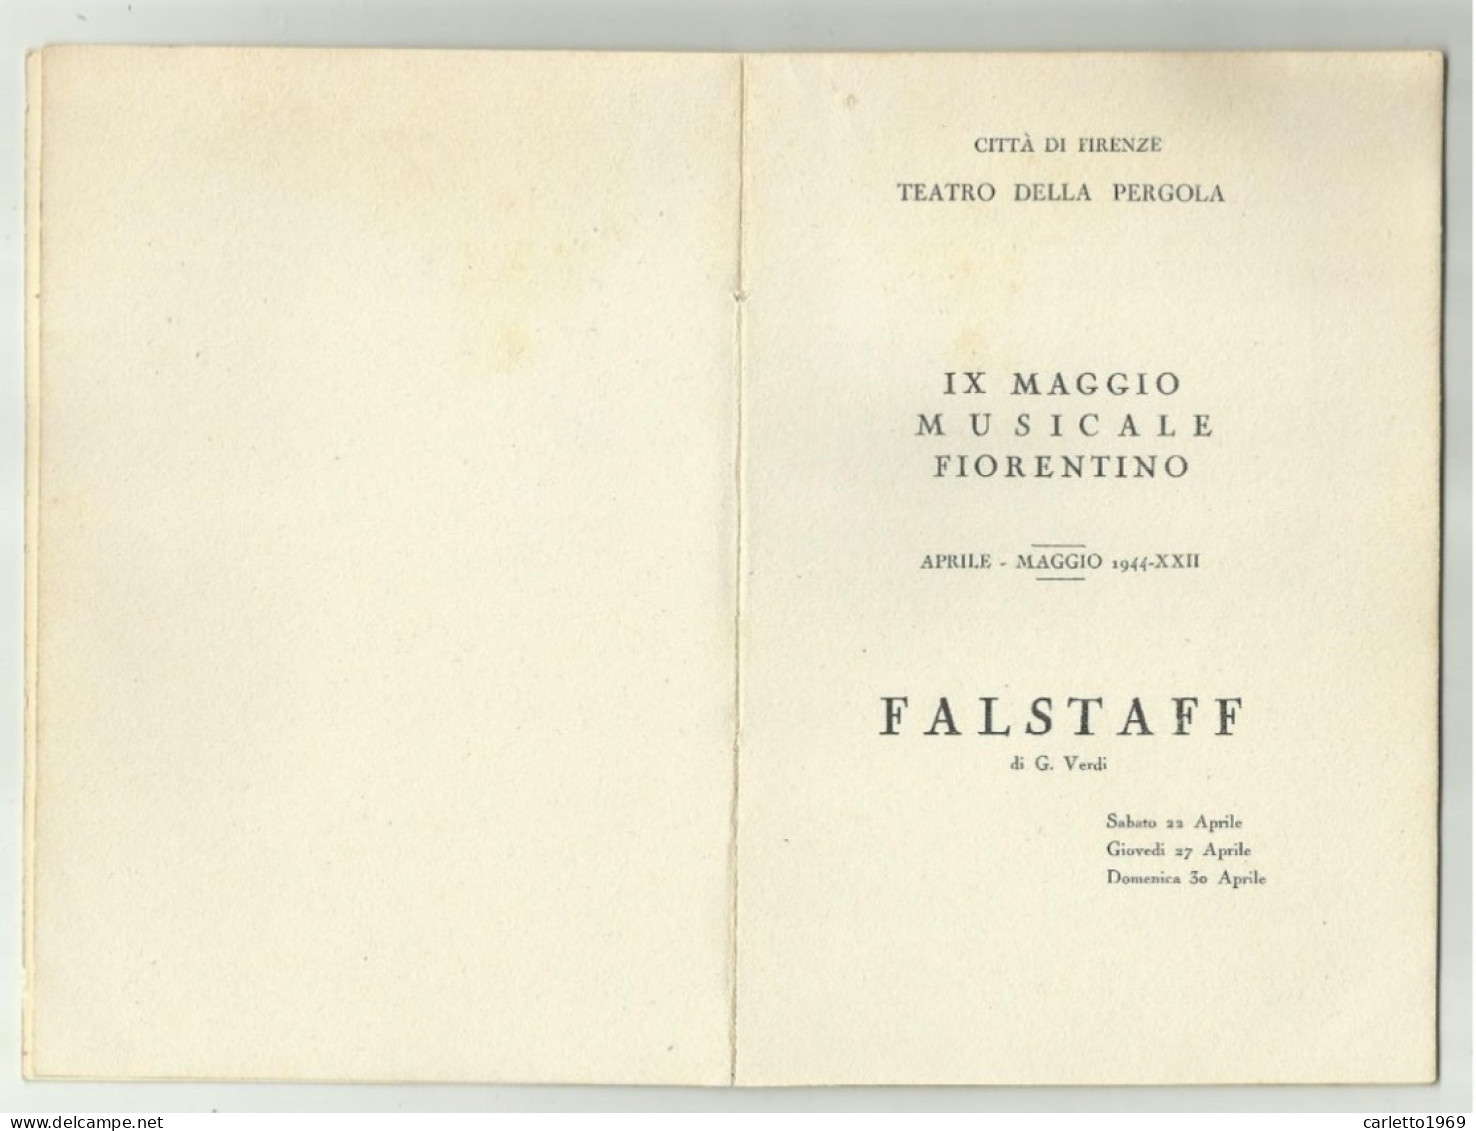 IX MAGGIO MUSICALE FIORENTINO 1944 LIBRETTO CITTA' DI FIRENZE CON TAGLIANDO POSTO POLTRONA 21 - Tickets De Concerts